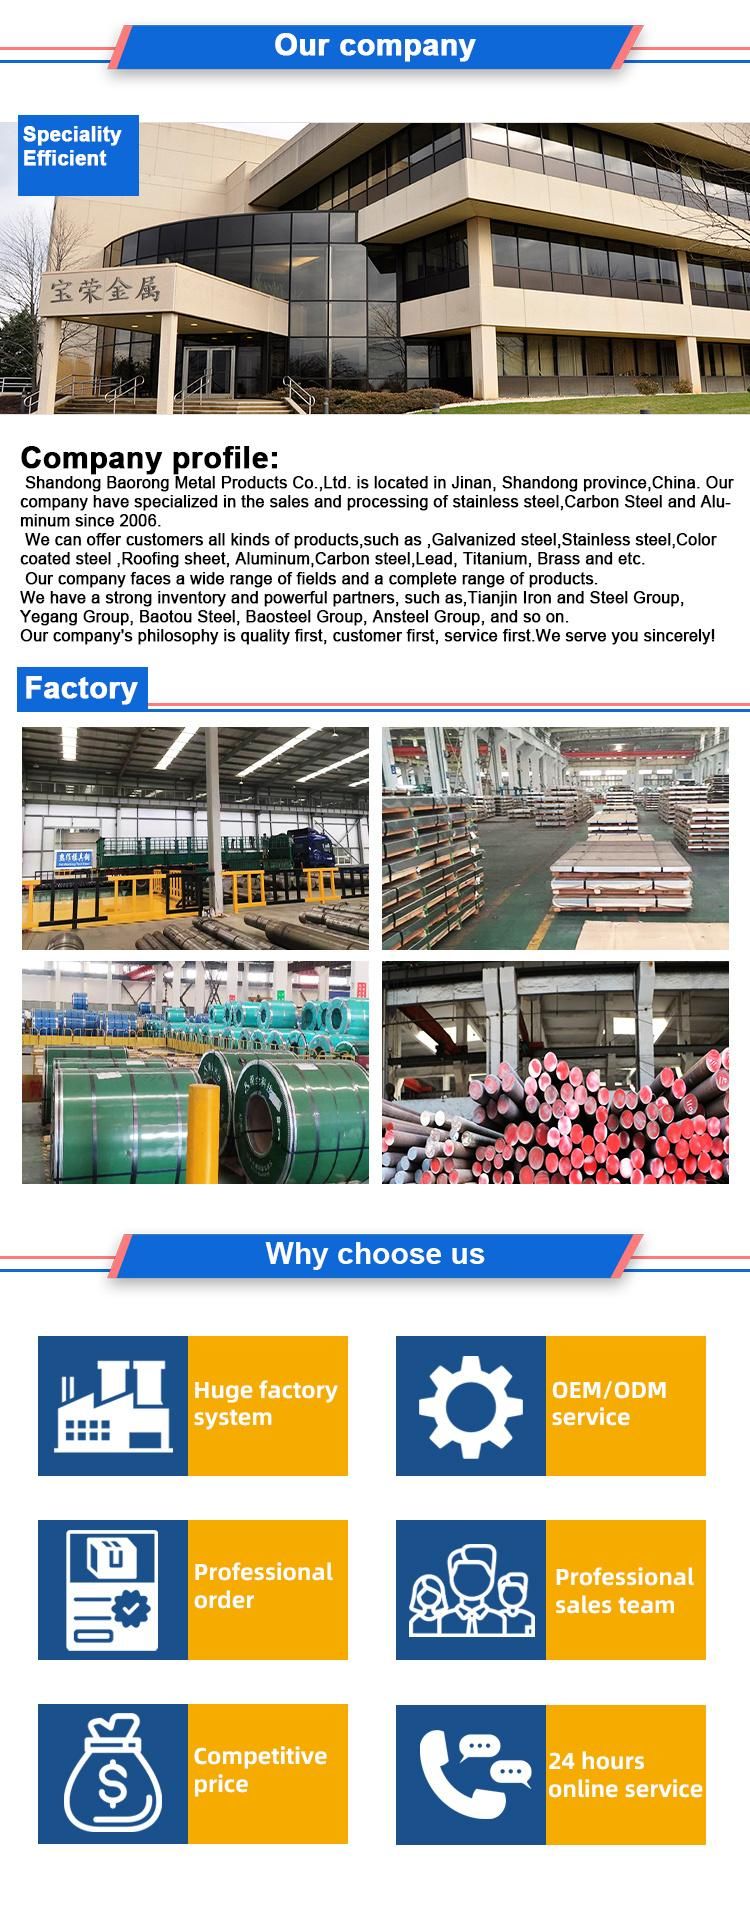 Sheet Steel Galvanized Corrugated Galvanized Steel Sheet China Supplier